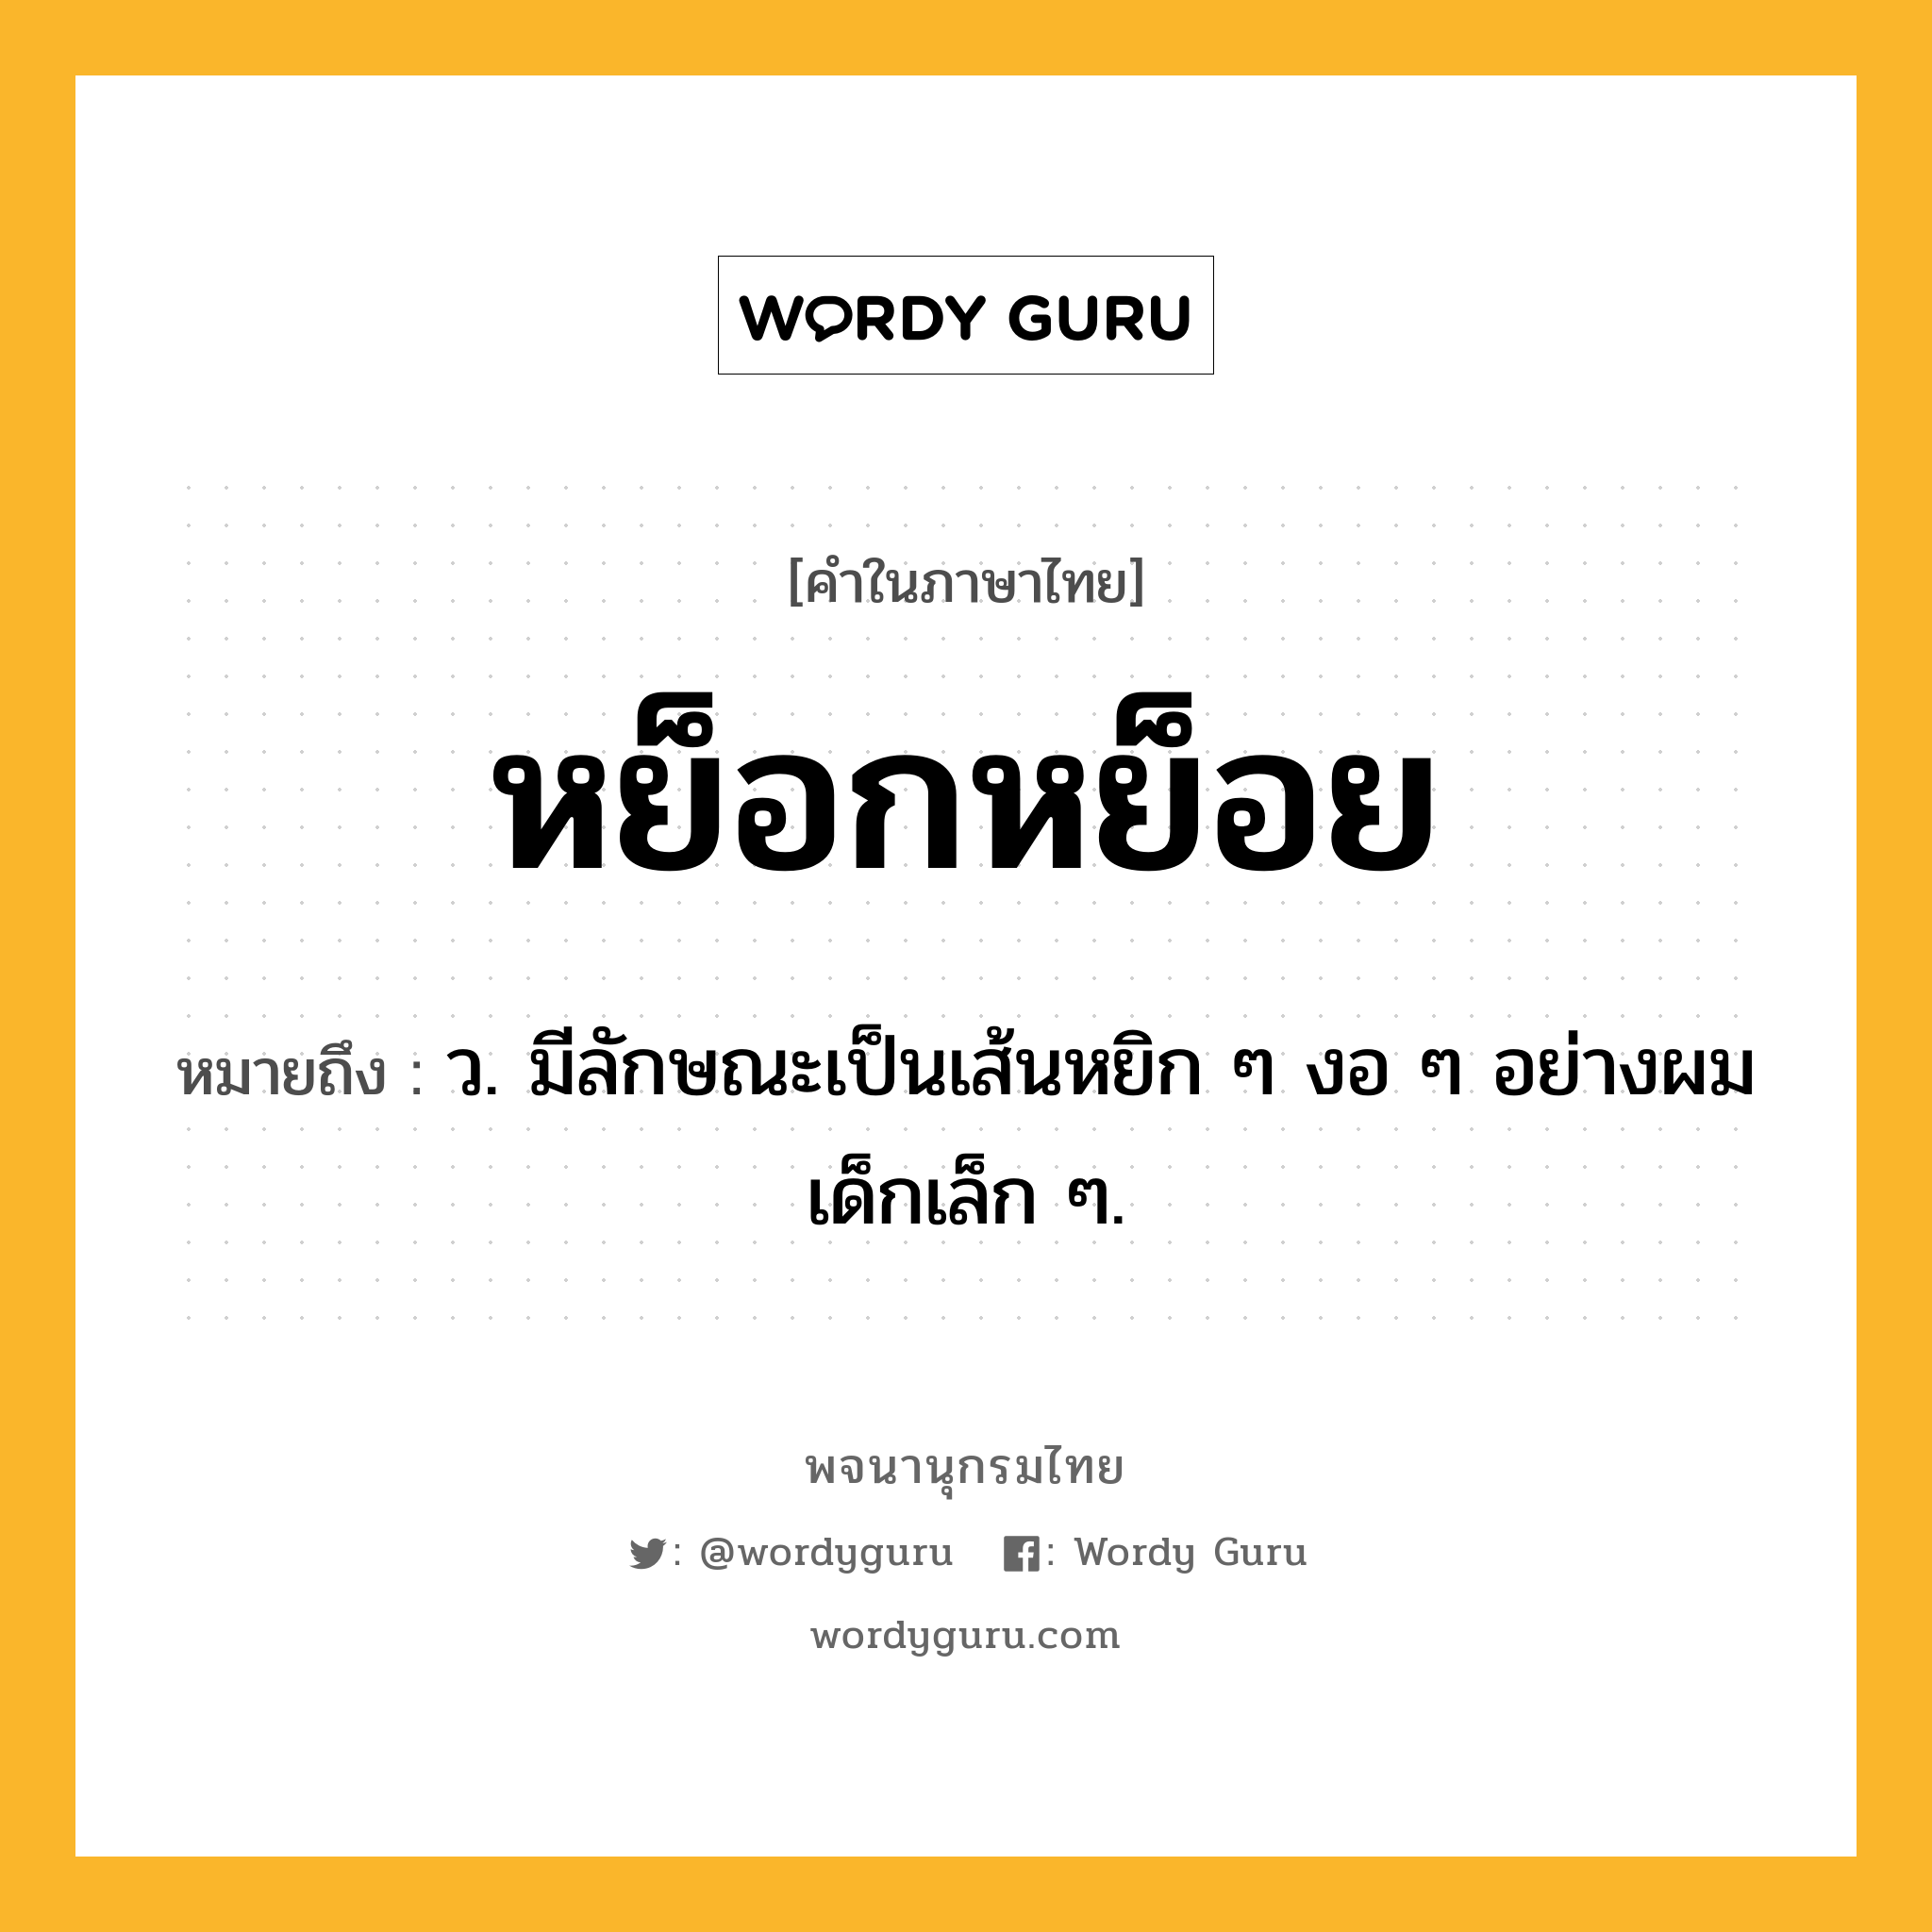 หย็อกหย็อย หมายถึงอะไร?, คำในภาษาไทย หย็อกหย็อย หมายถึง ว. มีลักษณะเป็นเส้นหยิก ๆ งอ ๆ อย่างผมเด็กเล็ก ๆ.